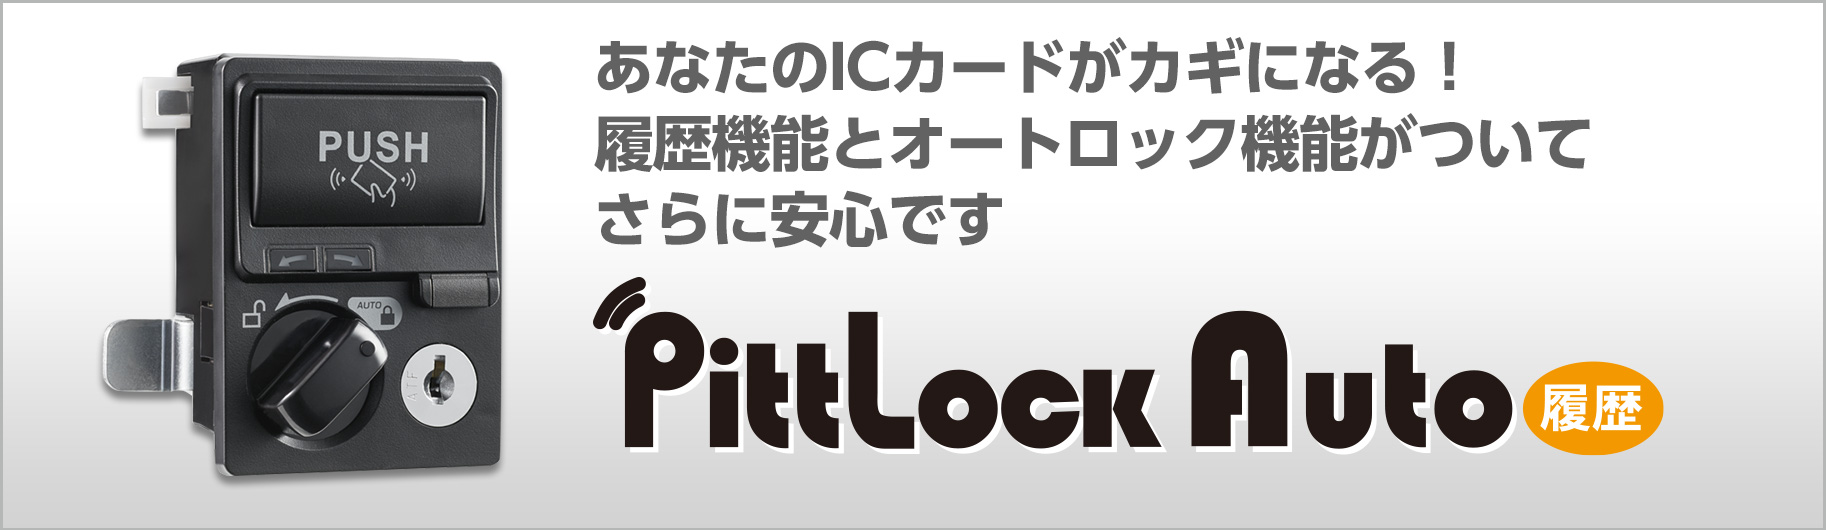 Pitt Lock Auto 履歴